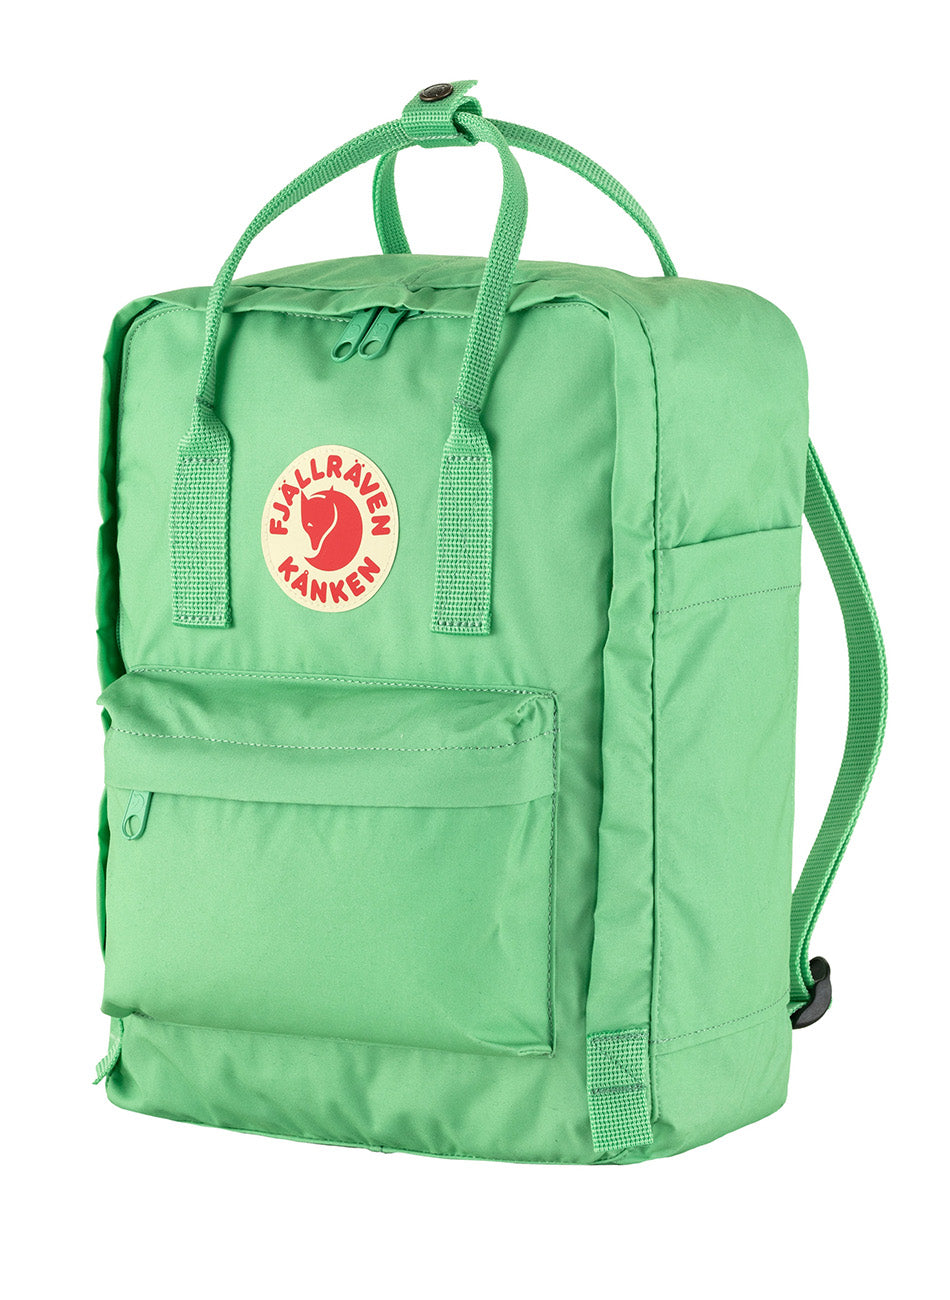 Kanken Backpack - Apple Mint